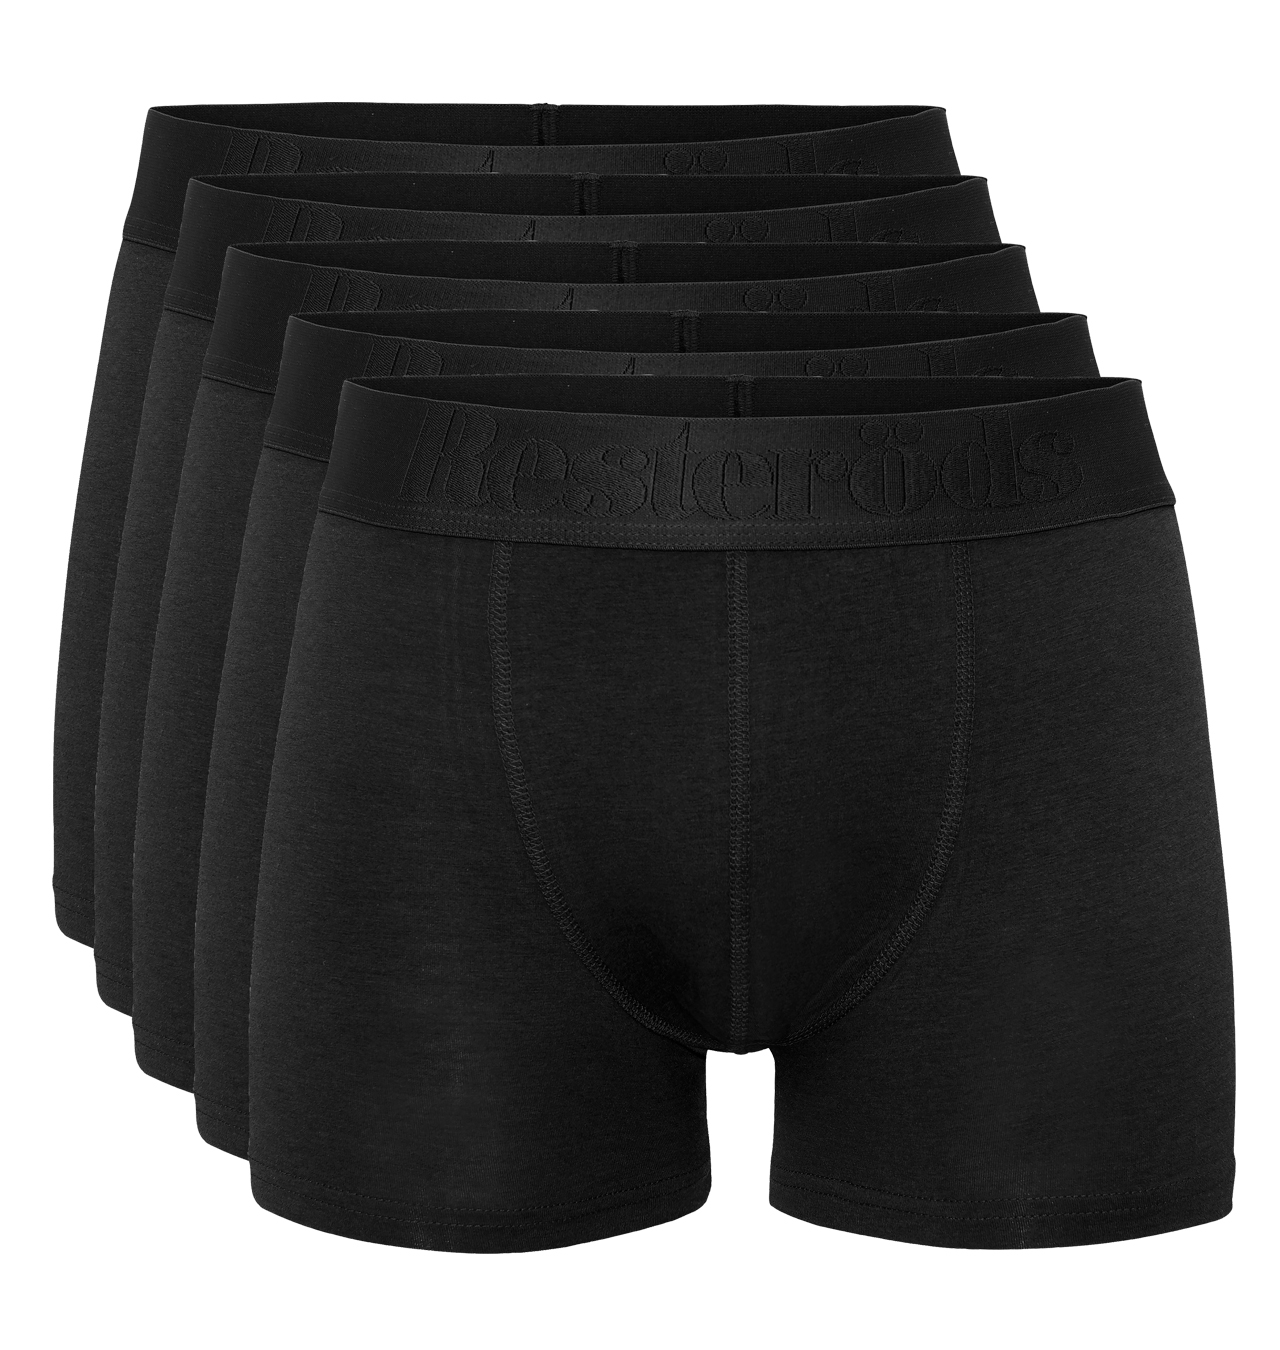 Resteröds - Gunnar Bamboo Boxer Shorts 5-pack - Black